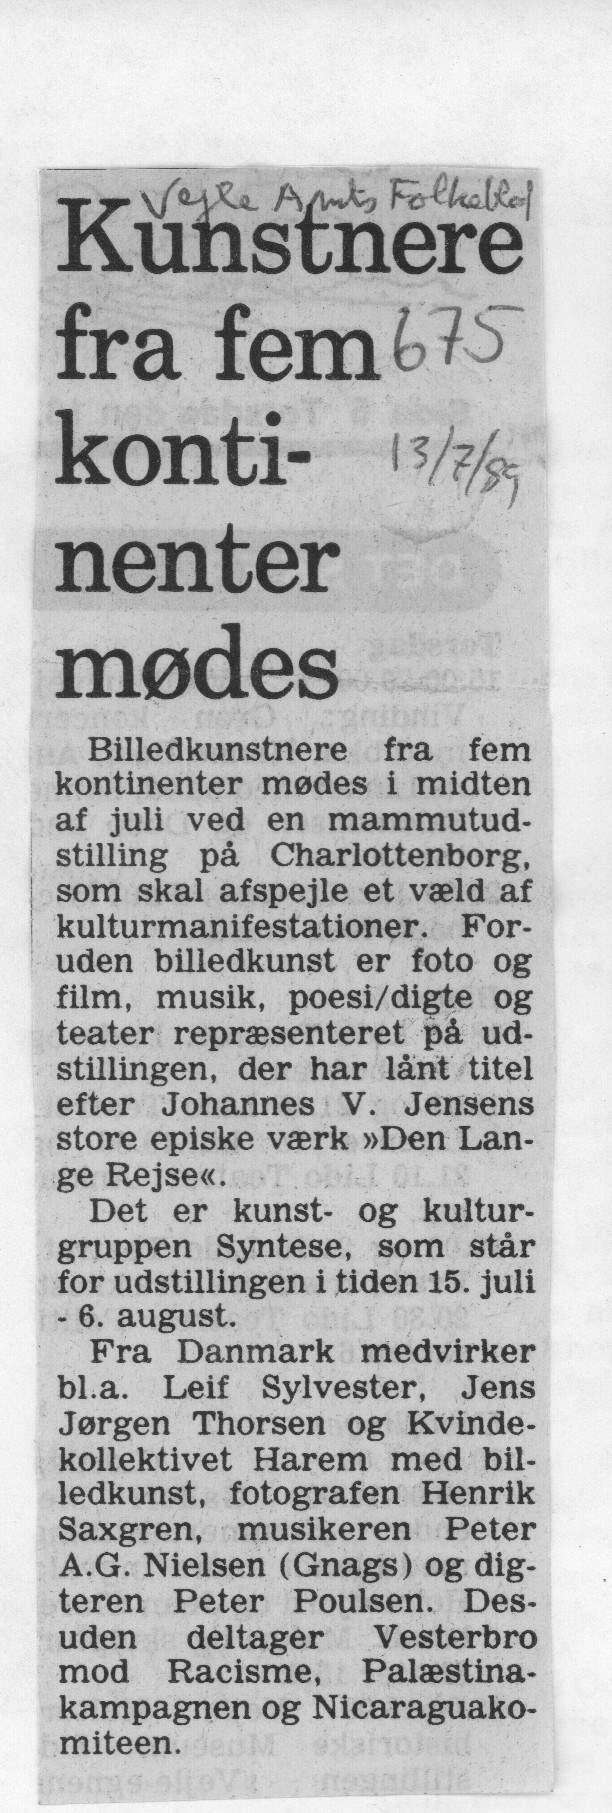 Kunstnere fra fem kontinenter mødes. Omtale (Den lange rejse. Charlottenborg 1989, København). Vejle Amts Folkeblad.